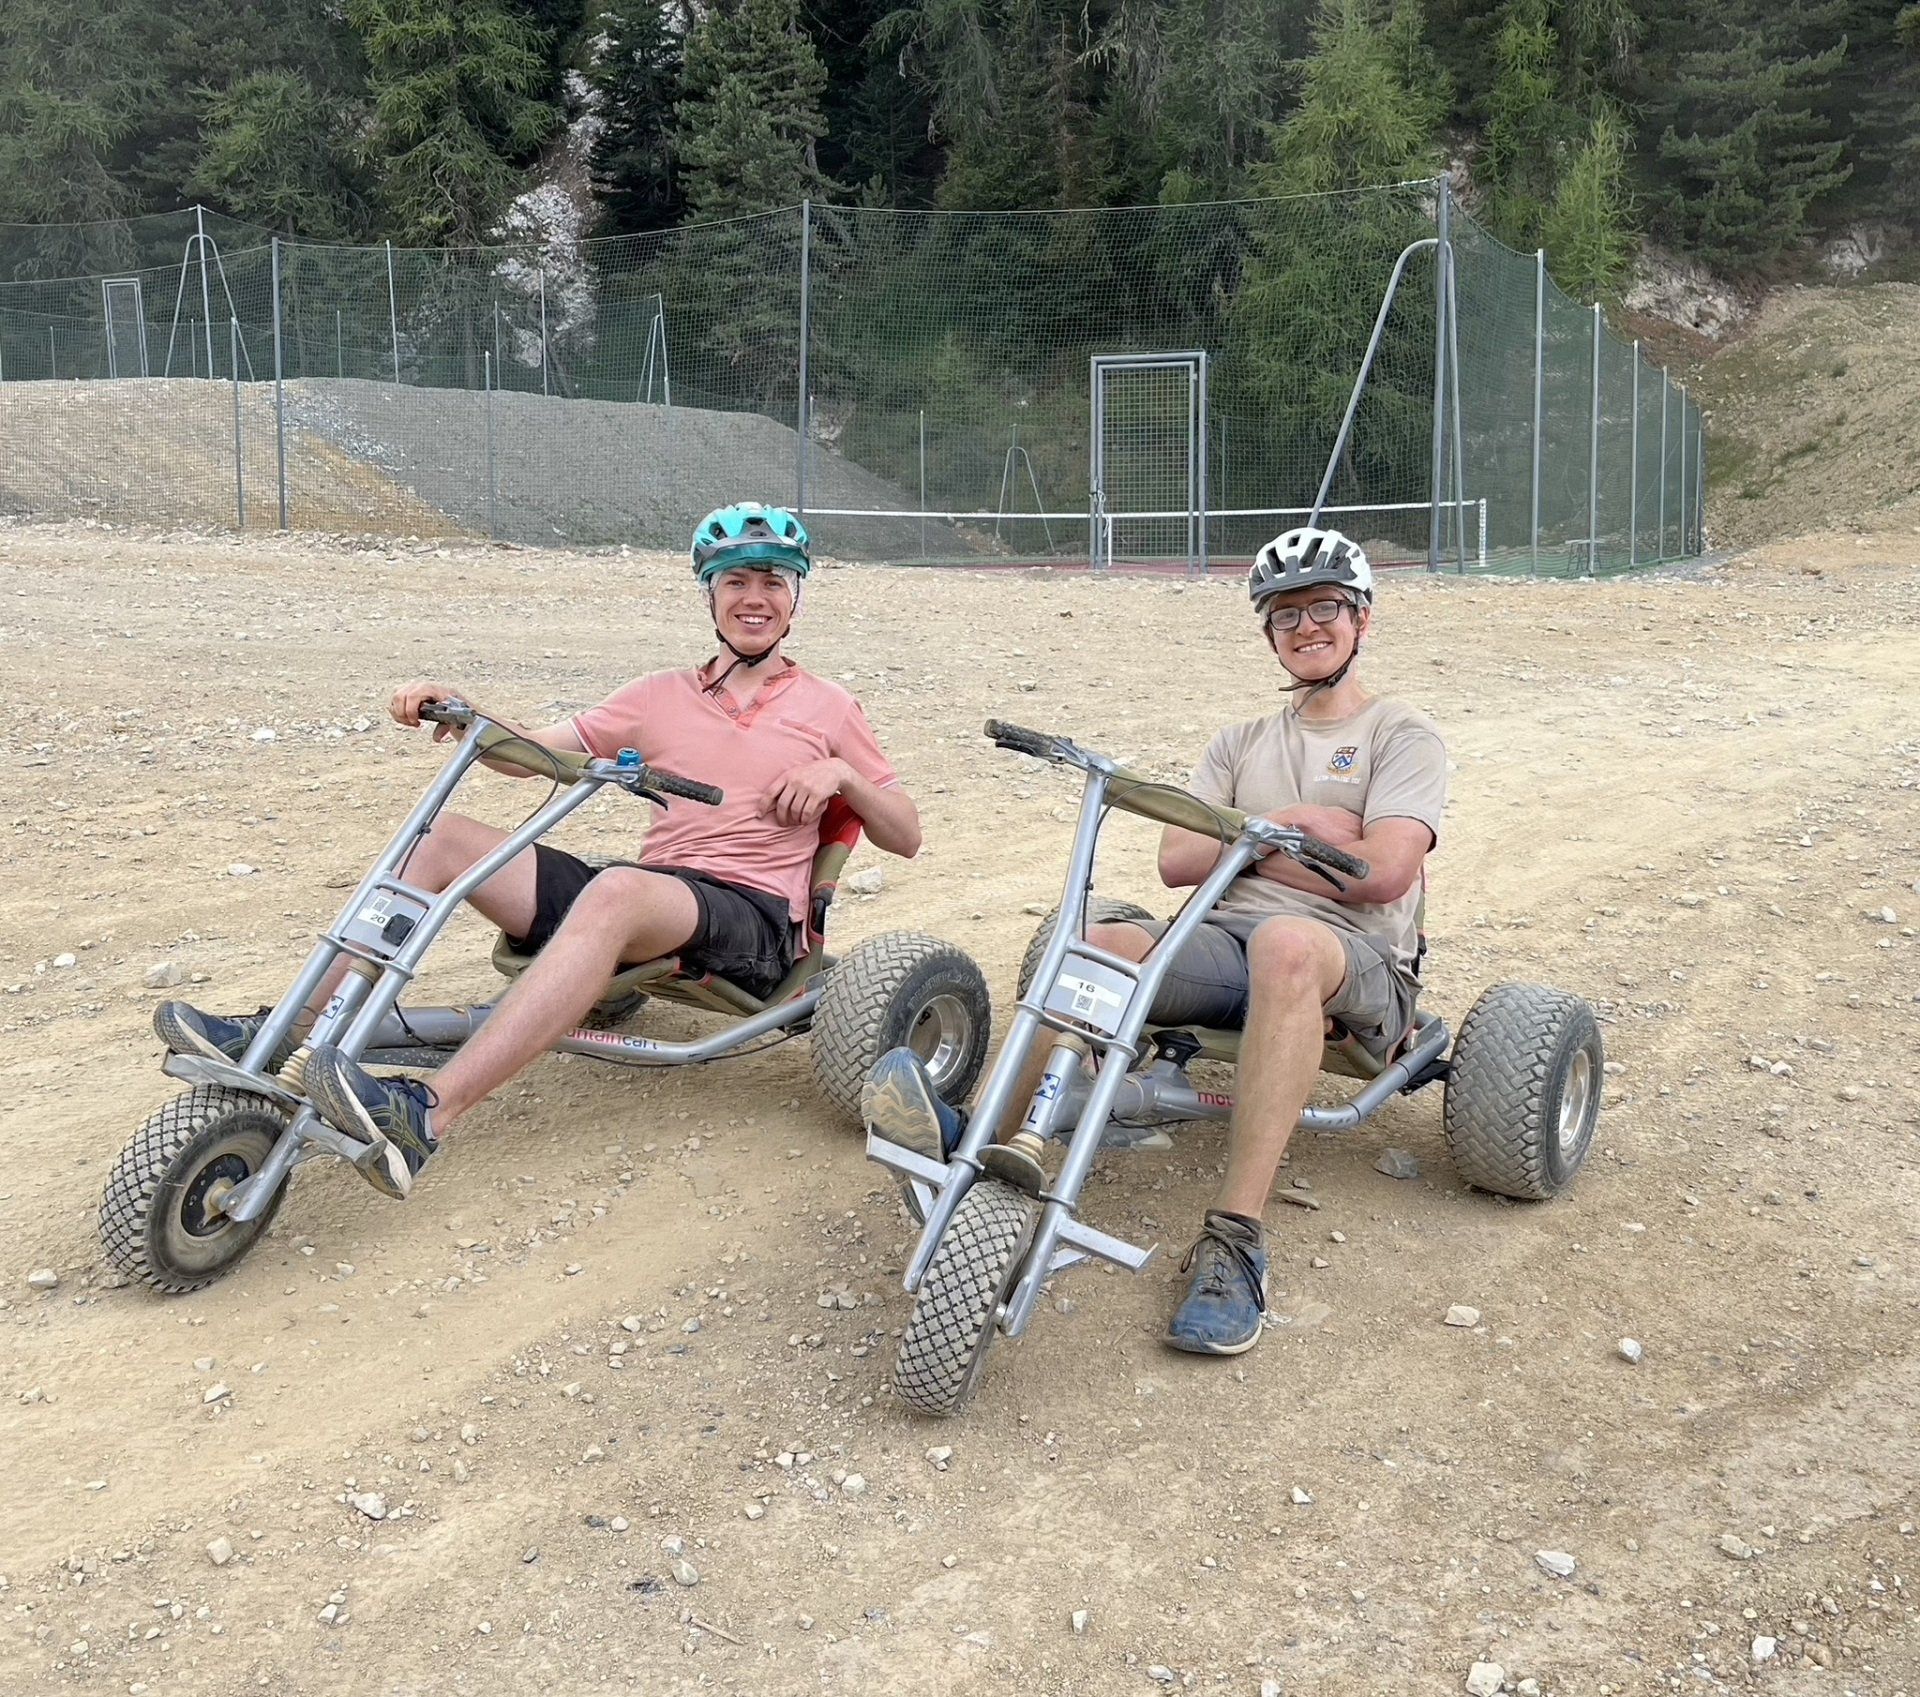 Sam and Olly Go-Karting in La Plagne